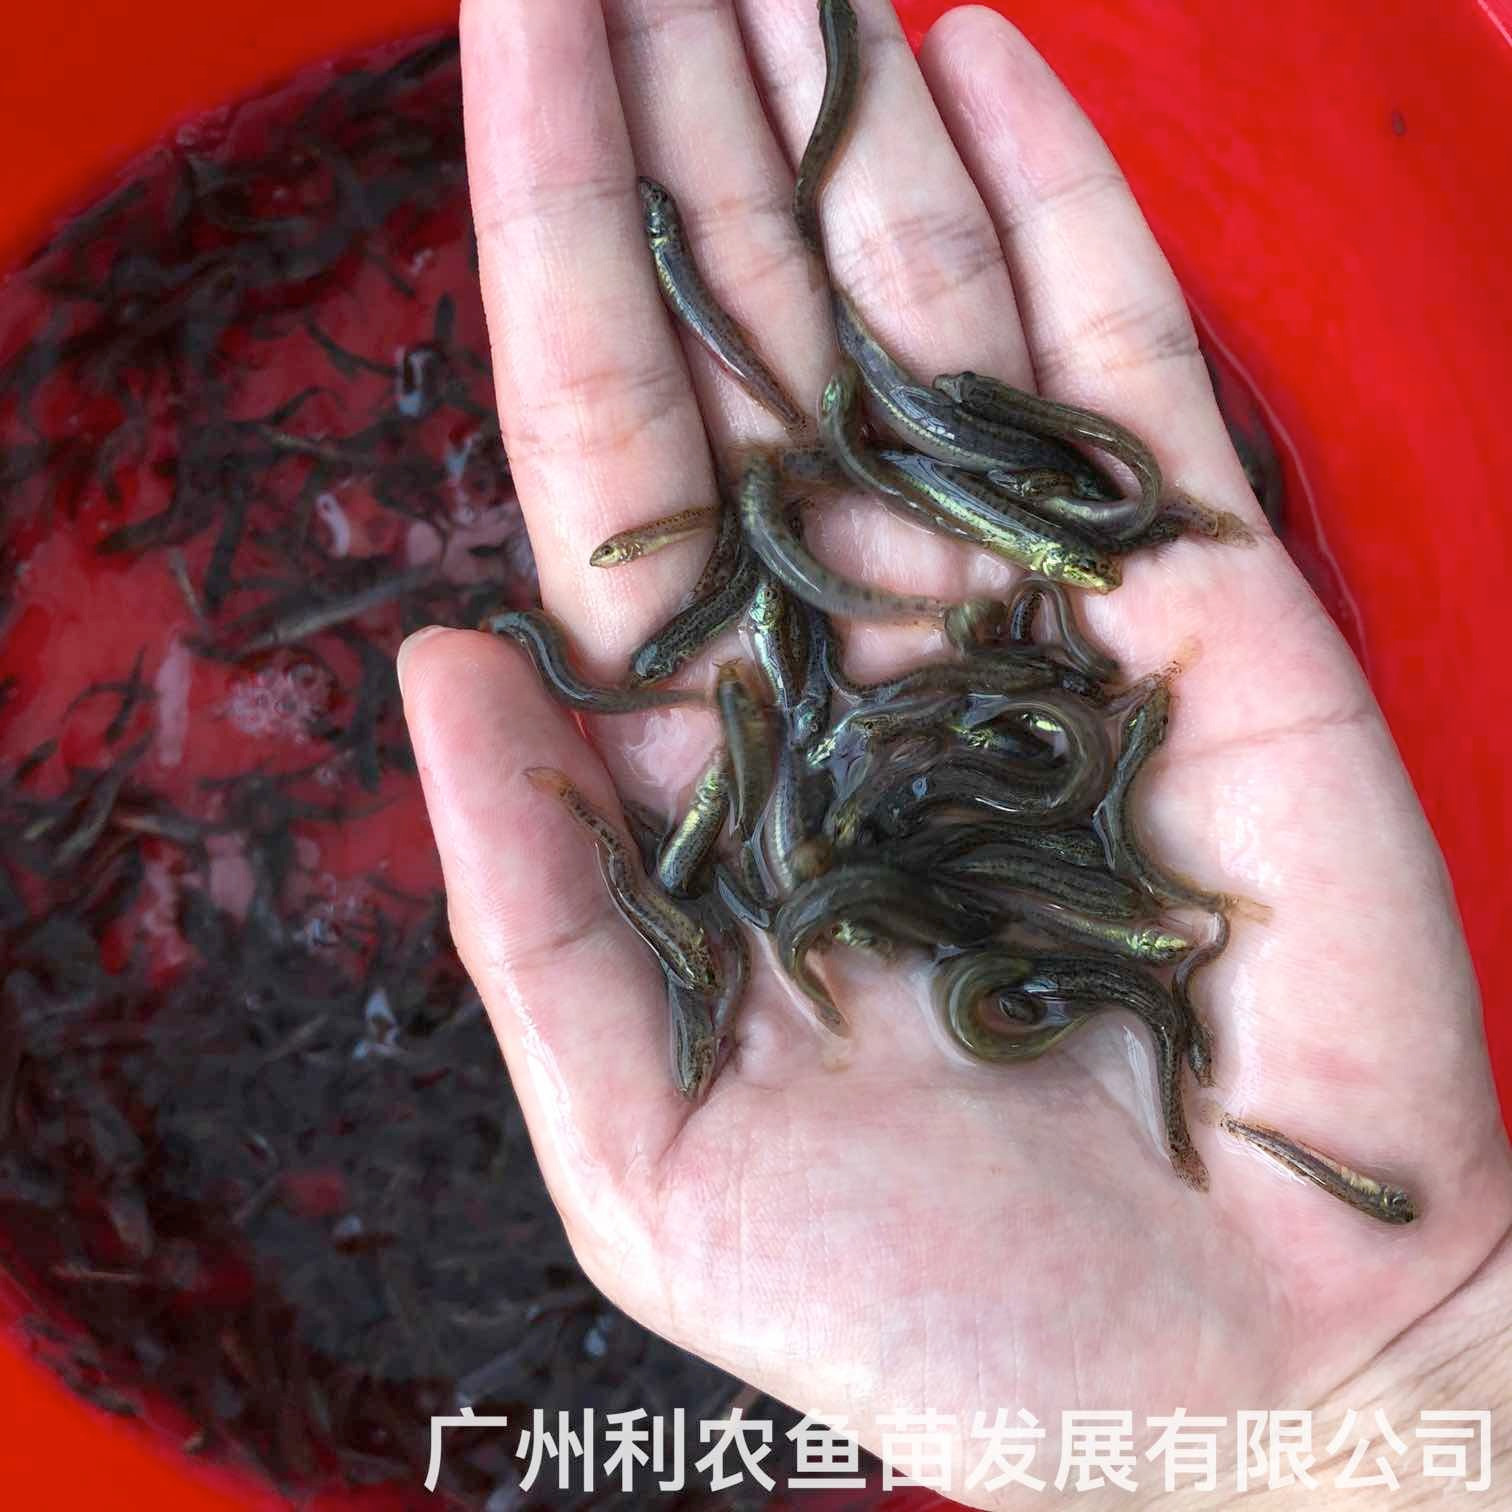 江西赣州台湾泥鳅苗出售出售江西上饶泥鳅鱼苗批发养殖基地